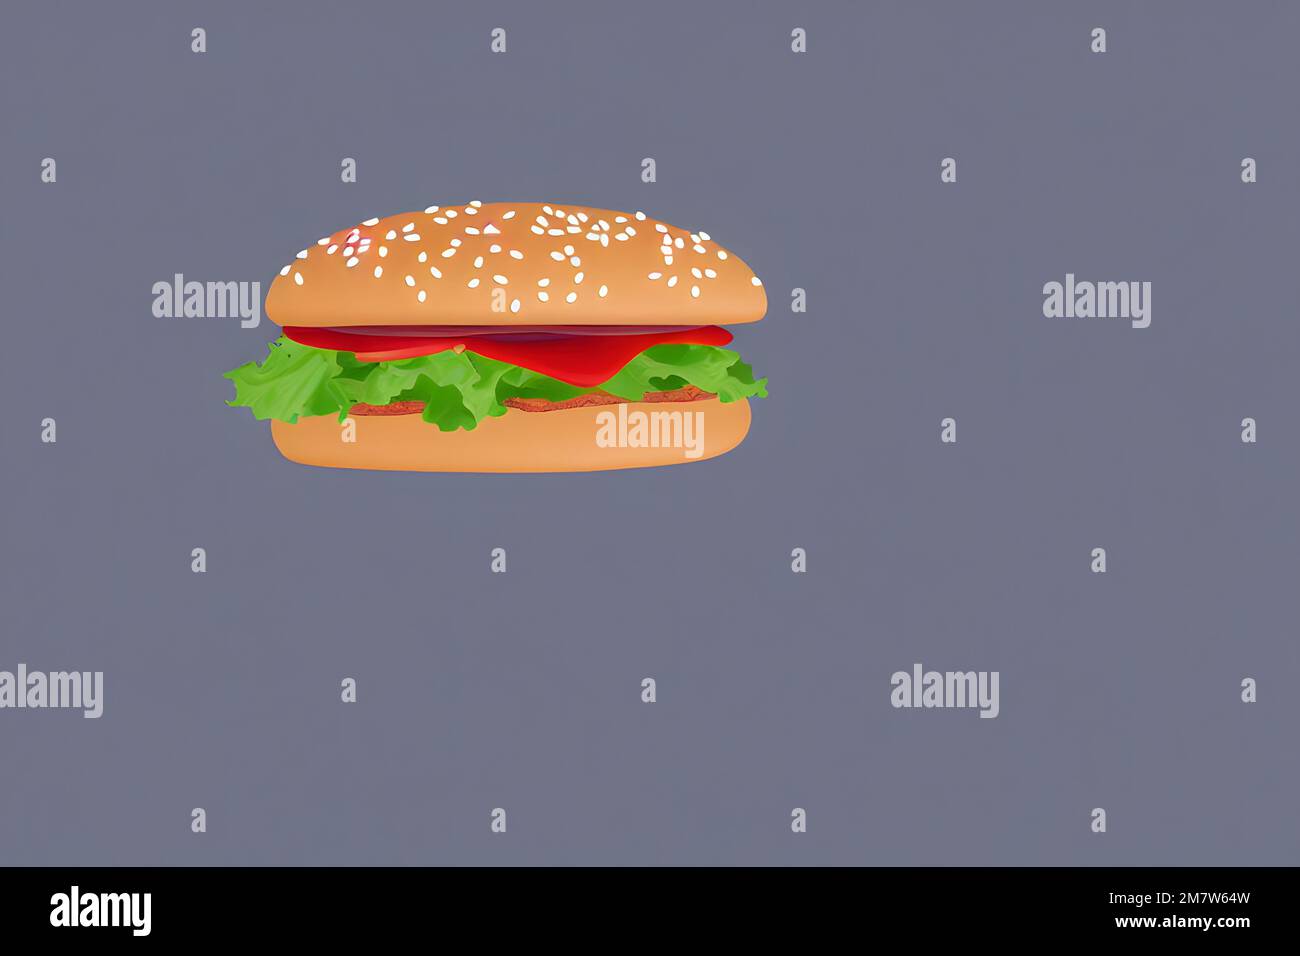 Illustrazione di hamburger in stile piatto, un classico fast food Foto Stock